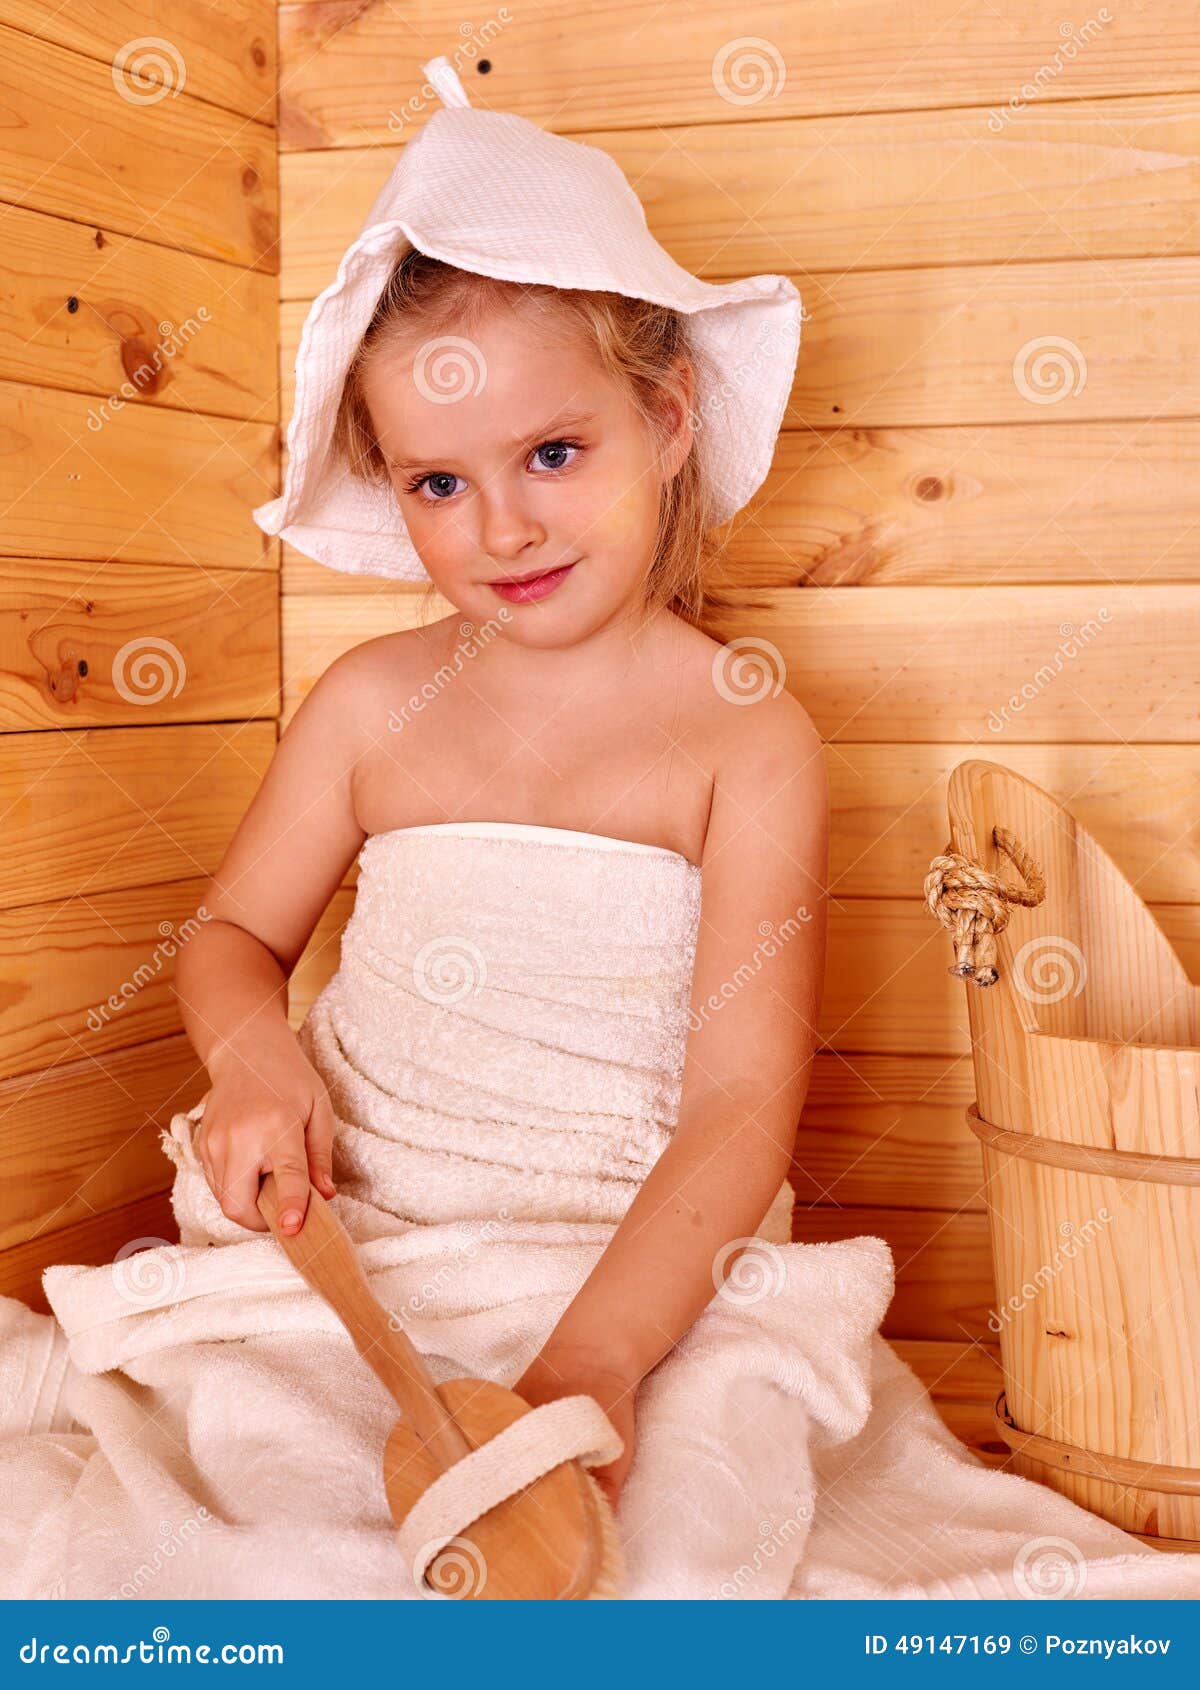 дети в бане с голыми фото 57